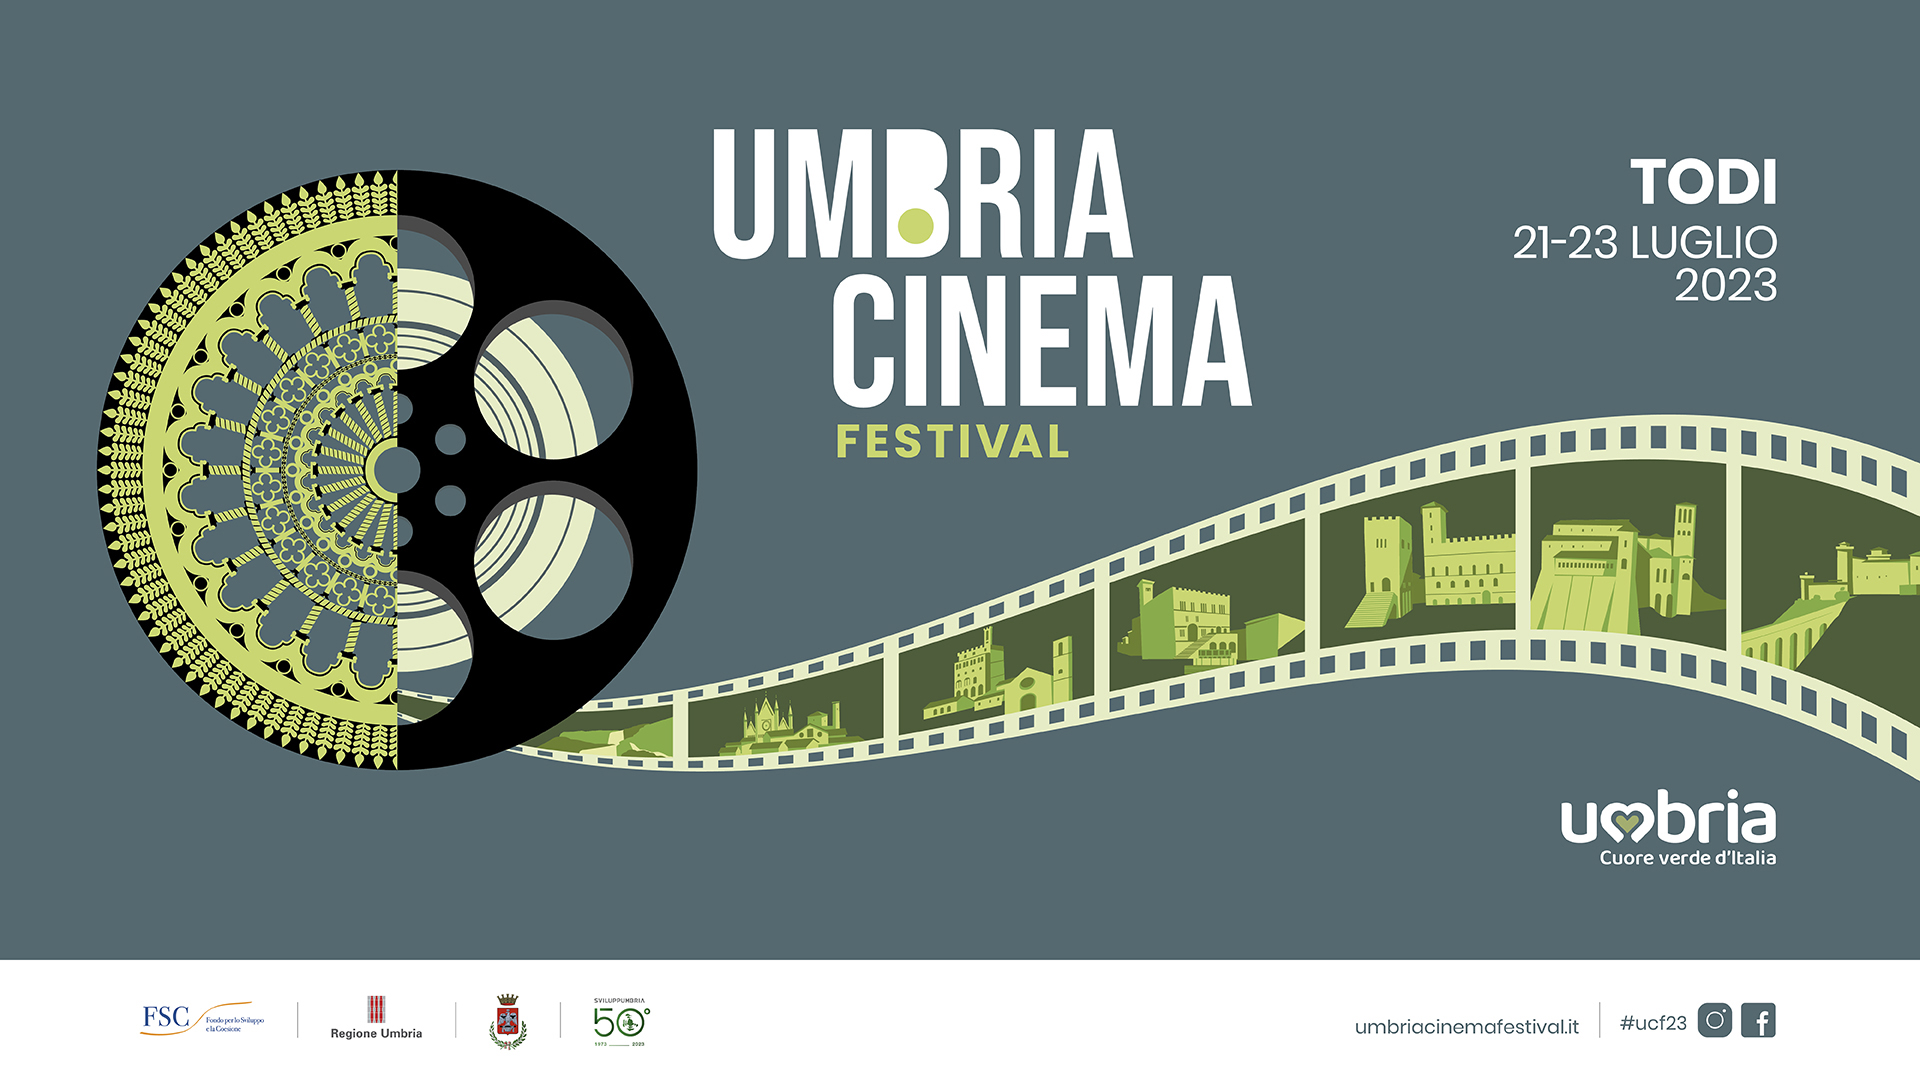 Umbria Cinema 2023, il programma completo e gli ospiti del Festival (Todi, 21-23 luglio)